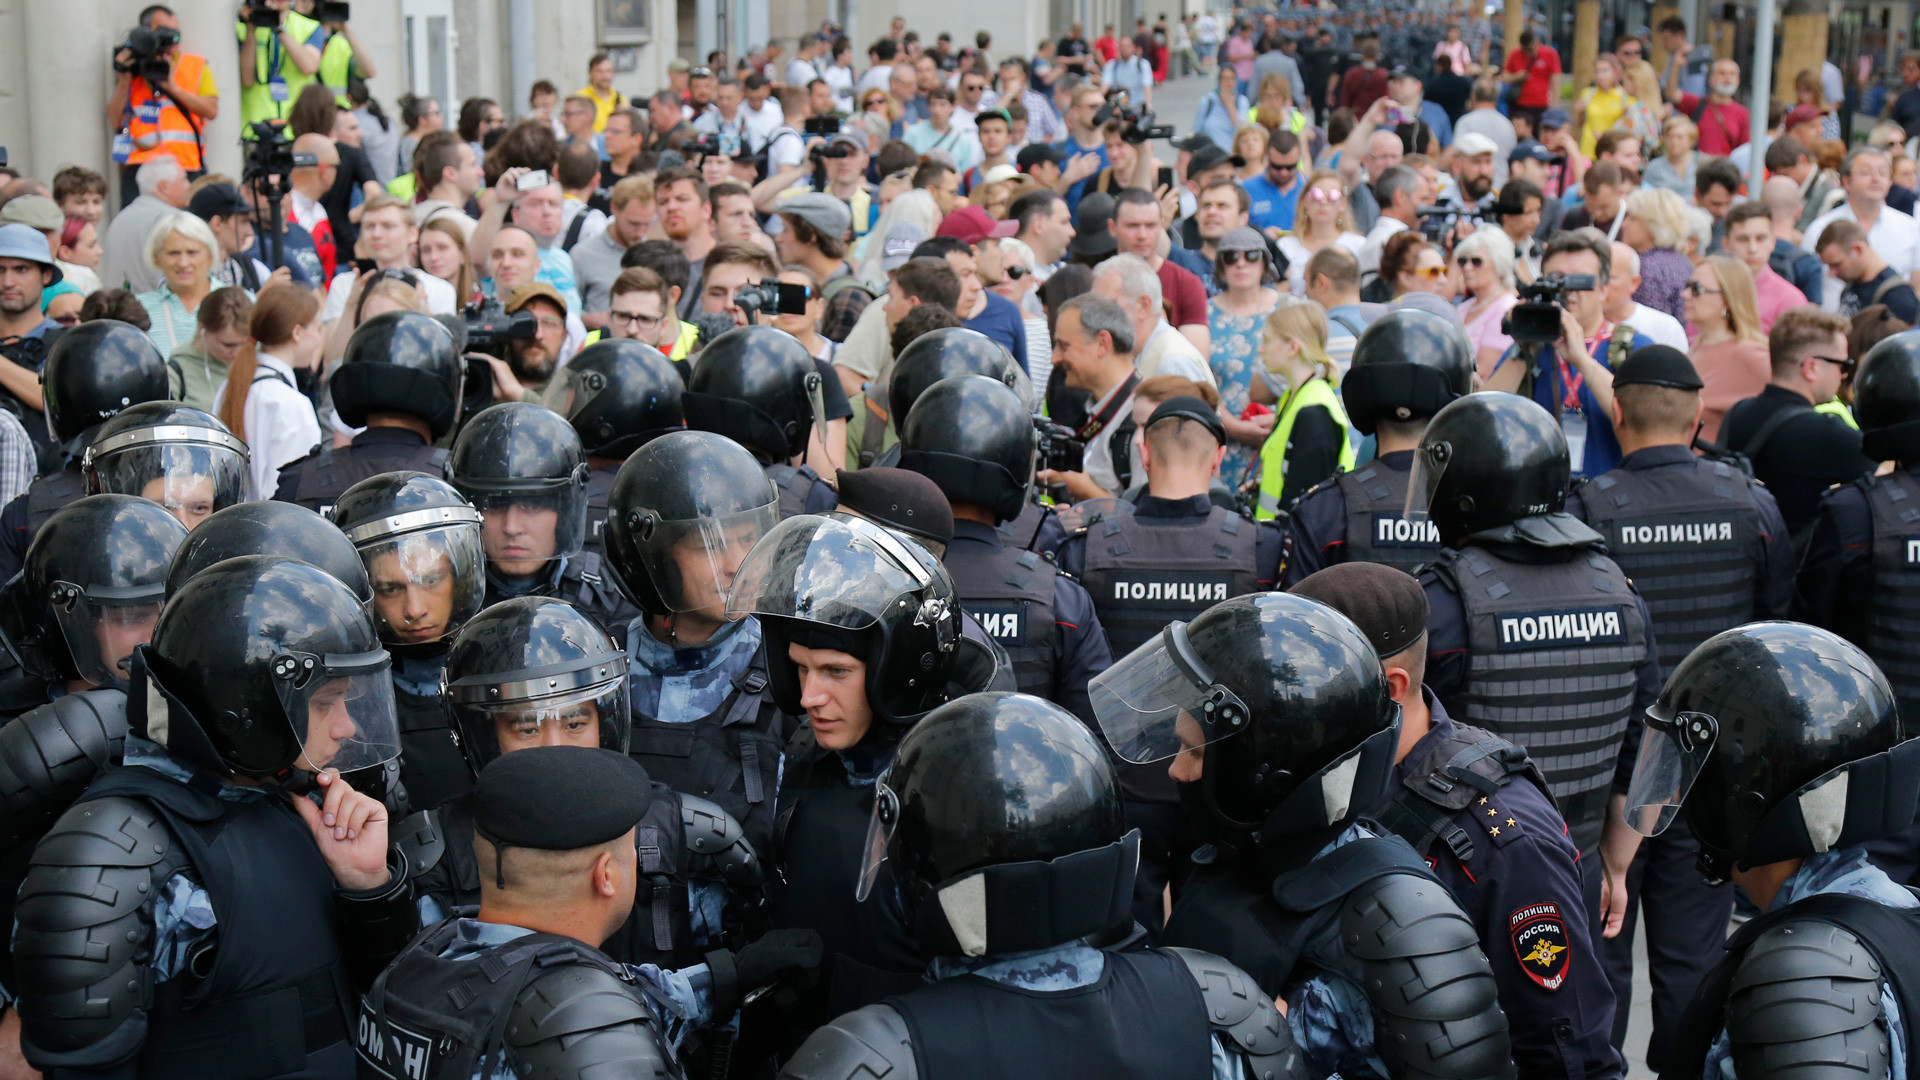 Митинг беспорядки. Митинг 27 июля 2019 в Москве. Массовые протесты в России. Массовые беспорядки полиция.